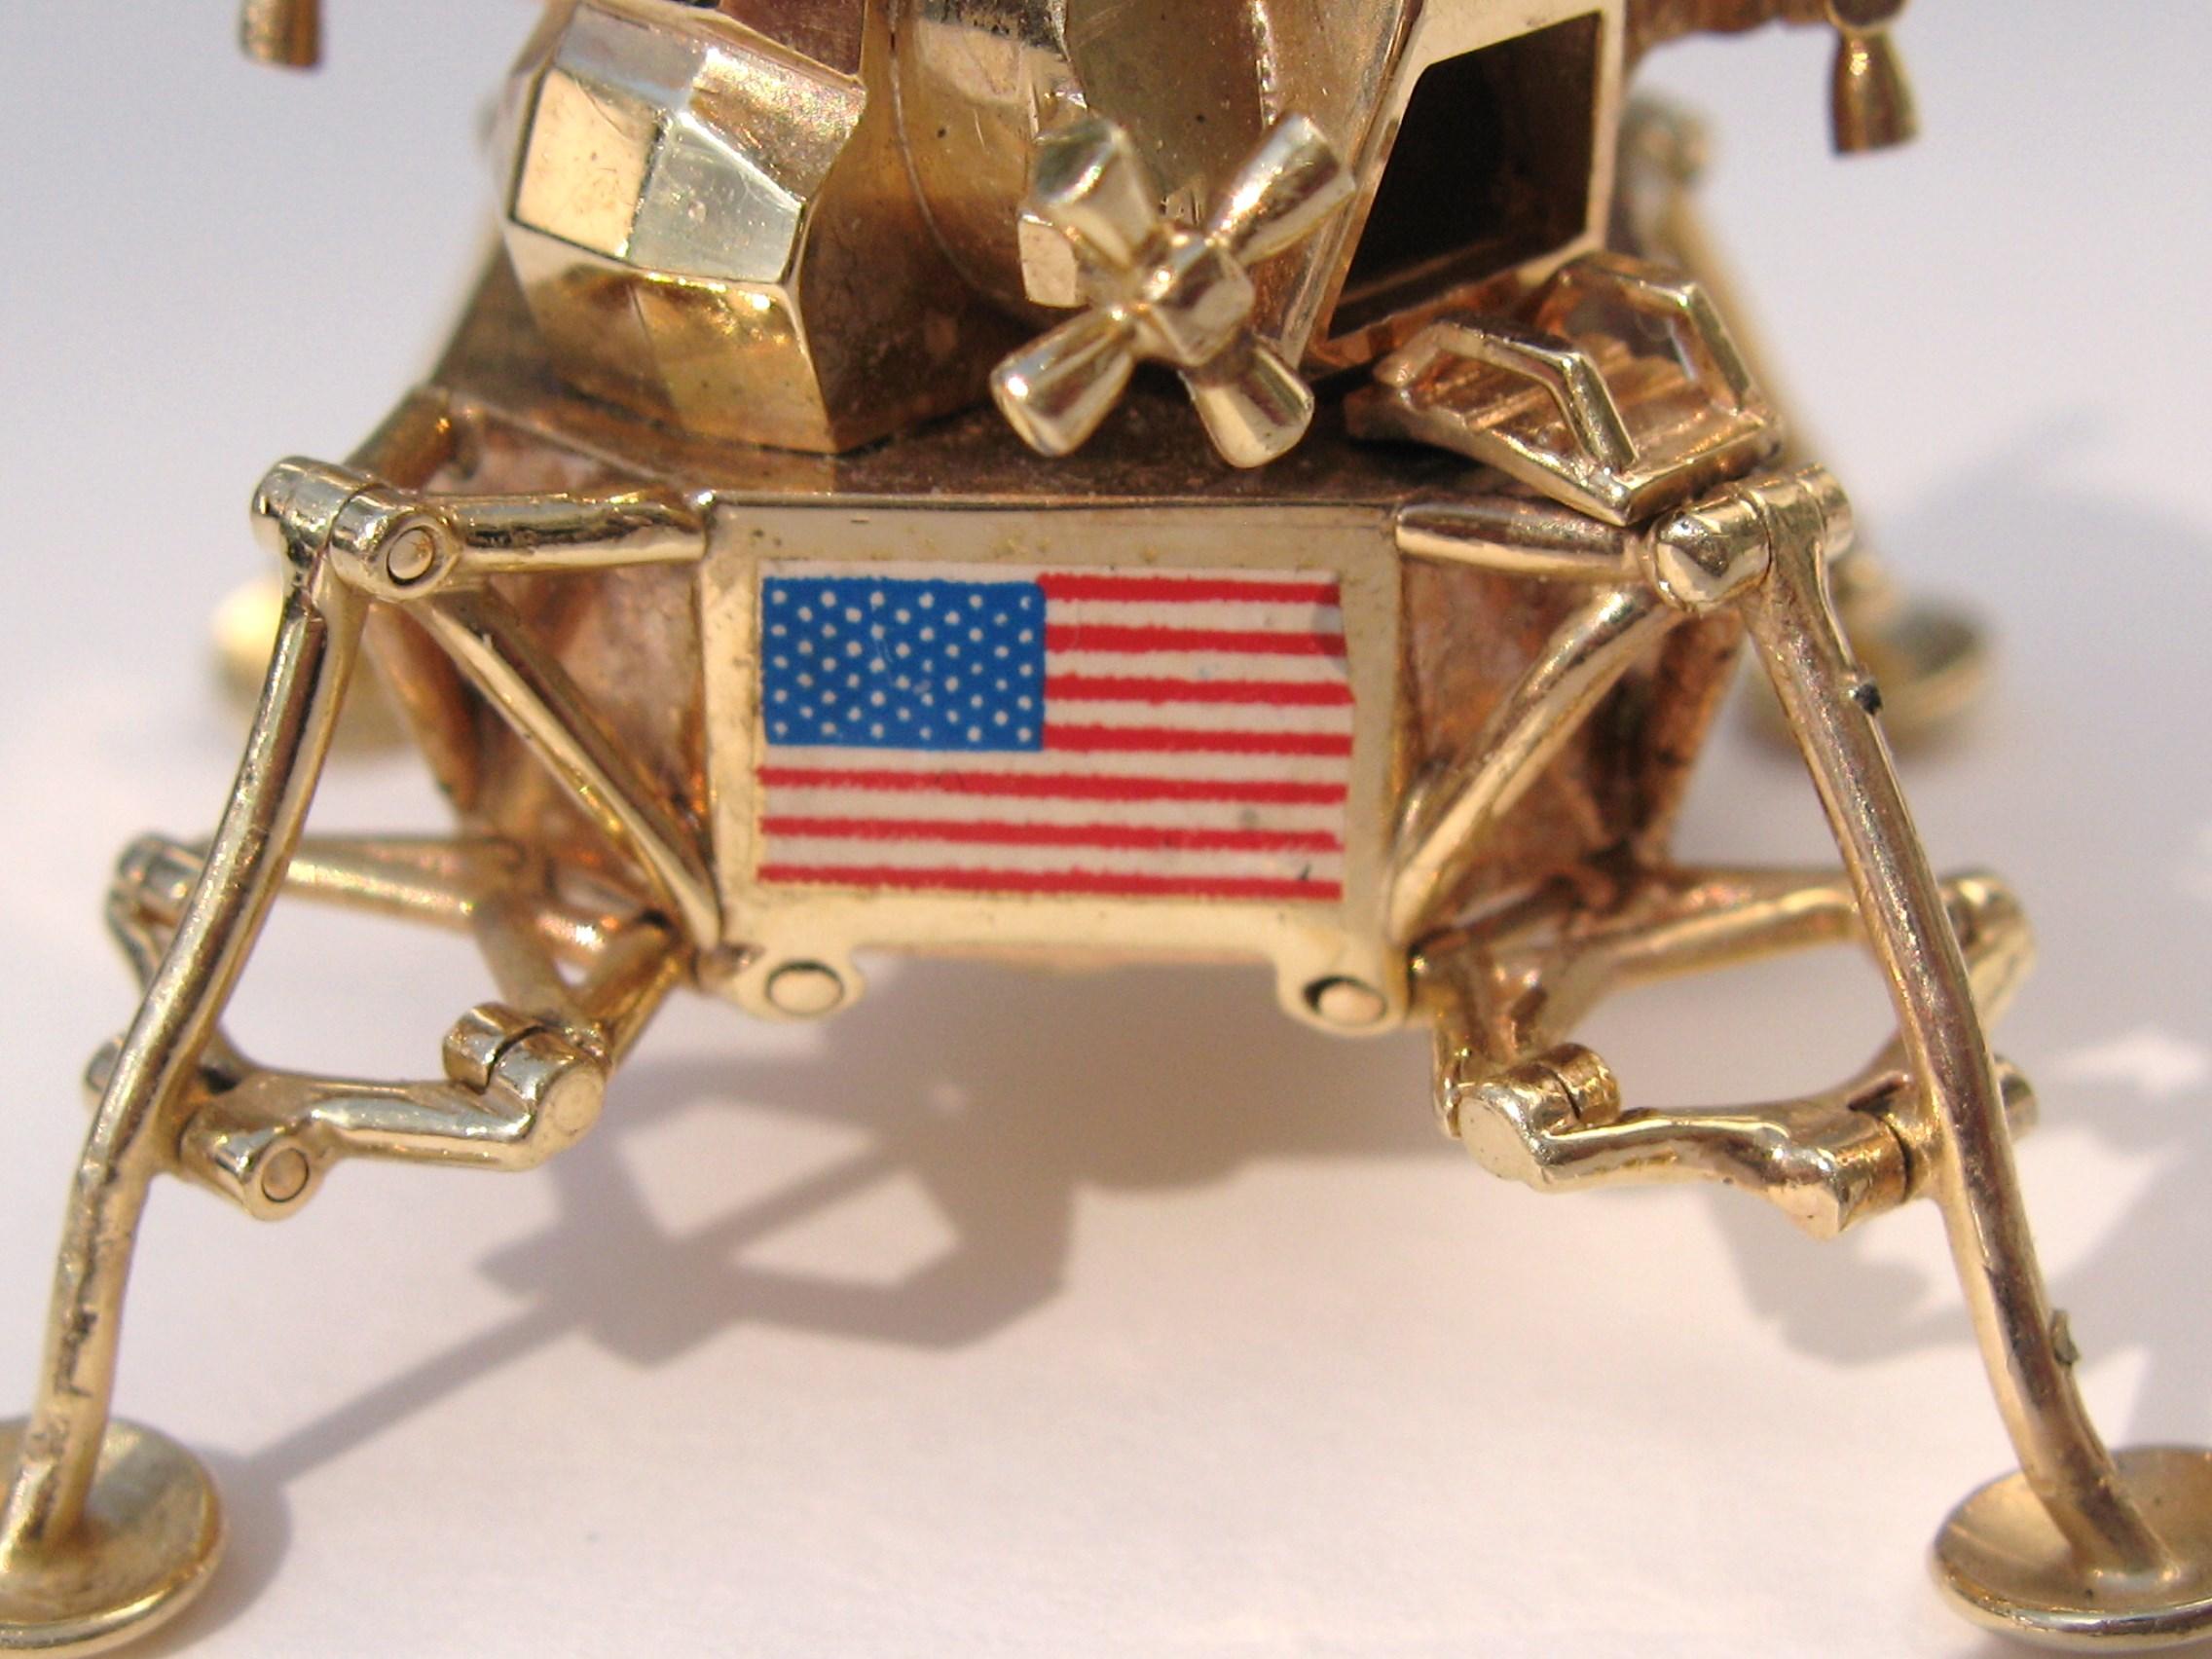 Contemporary 14 Karat Gold model of Apollo 11 articulated Lunar Excursion, 1969 Module, USA